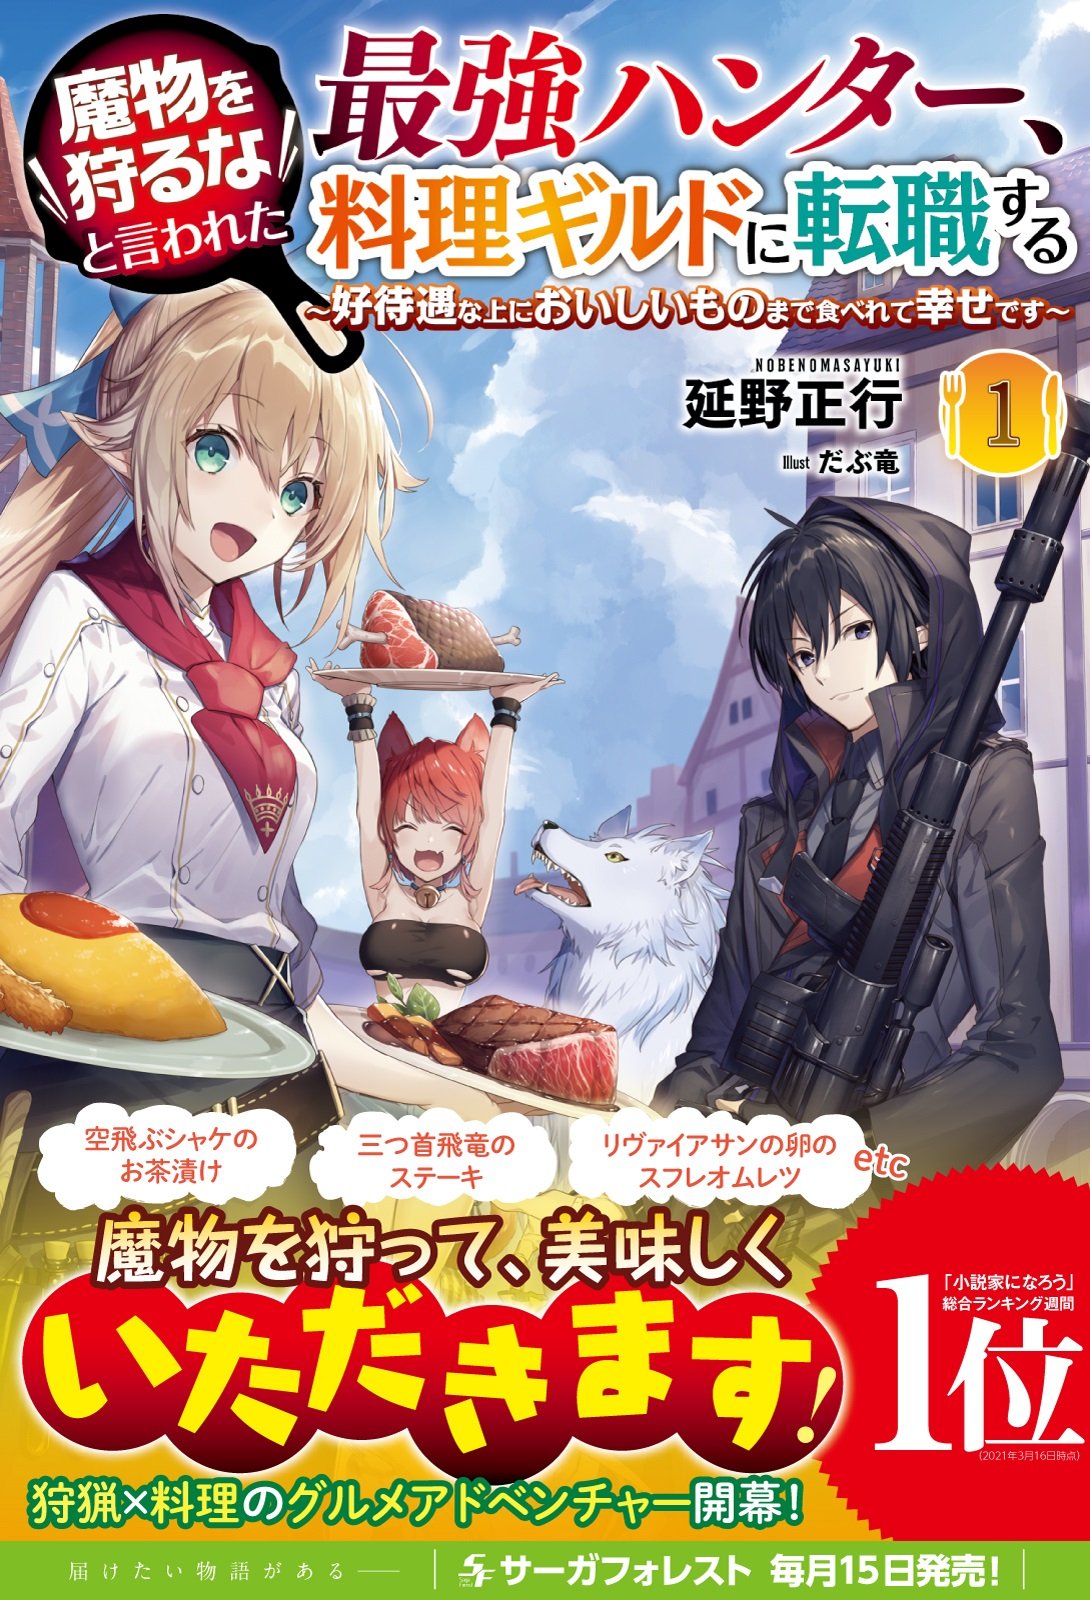 Sword Art Online Alternative - Gun Gale Online - MangaDex